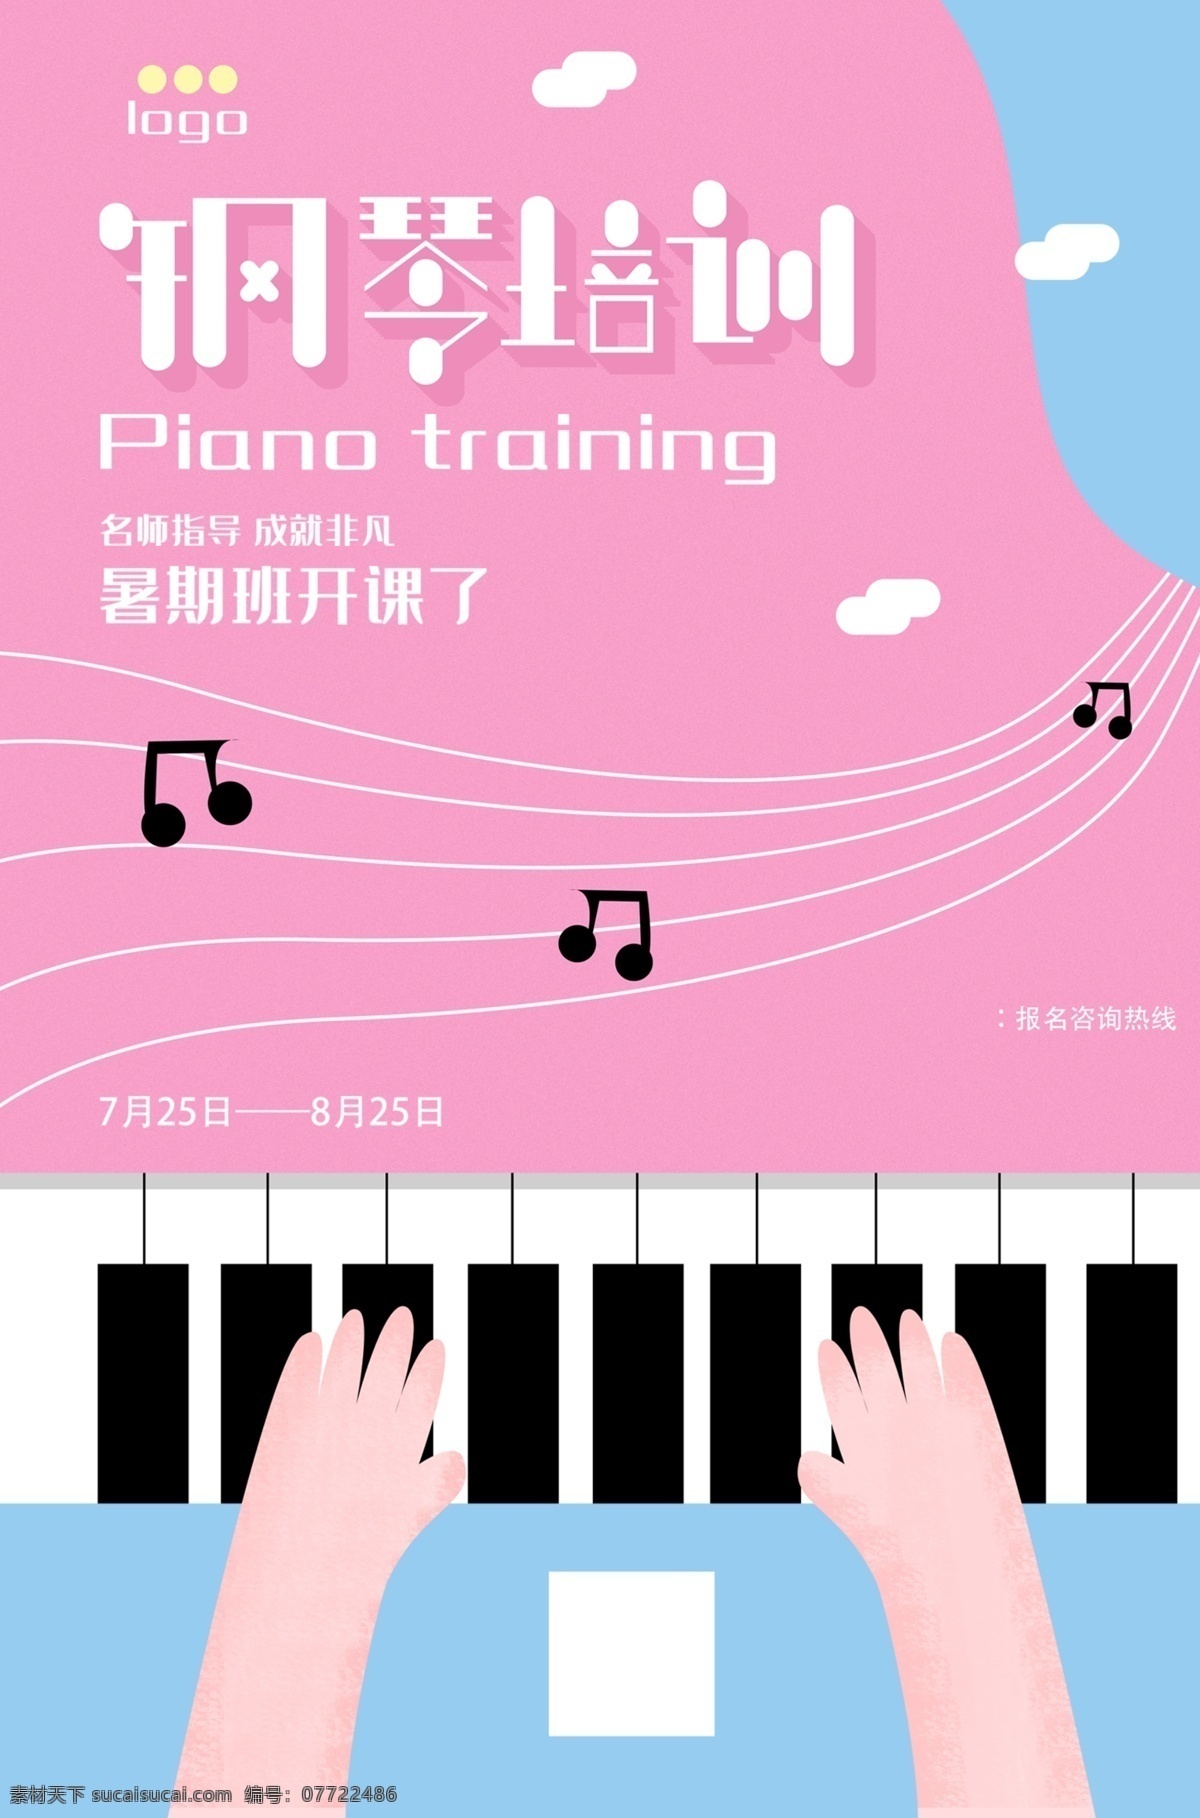 钢琴培训 学校招生 进步学习 钢琴教育 少儿教育